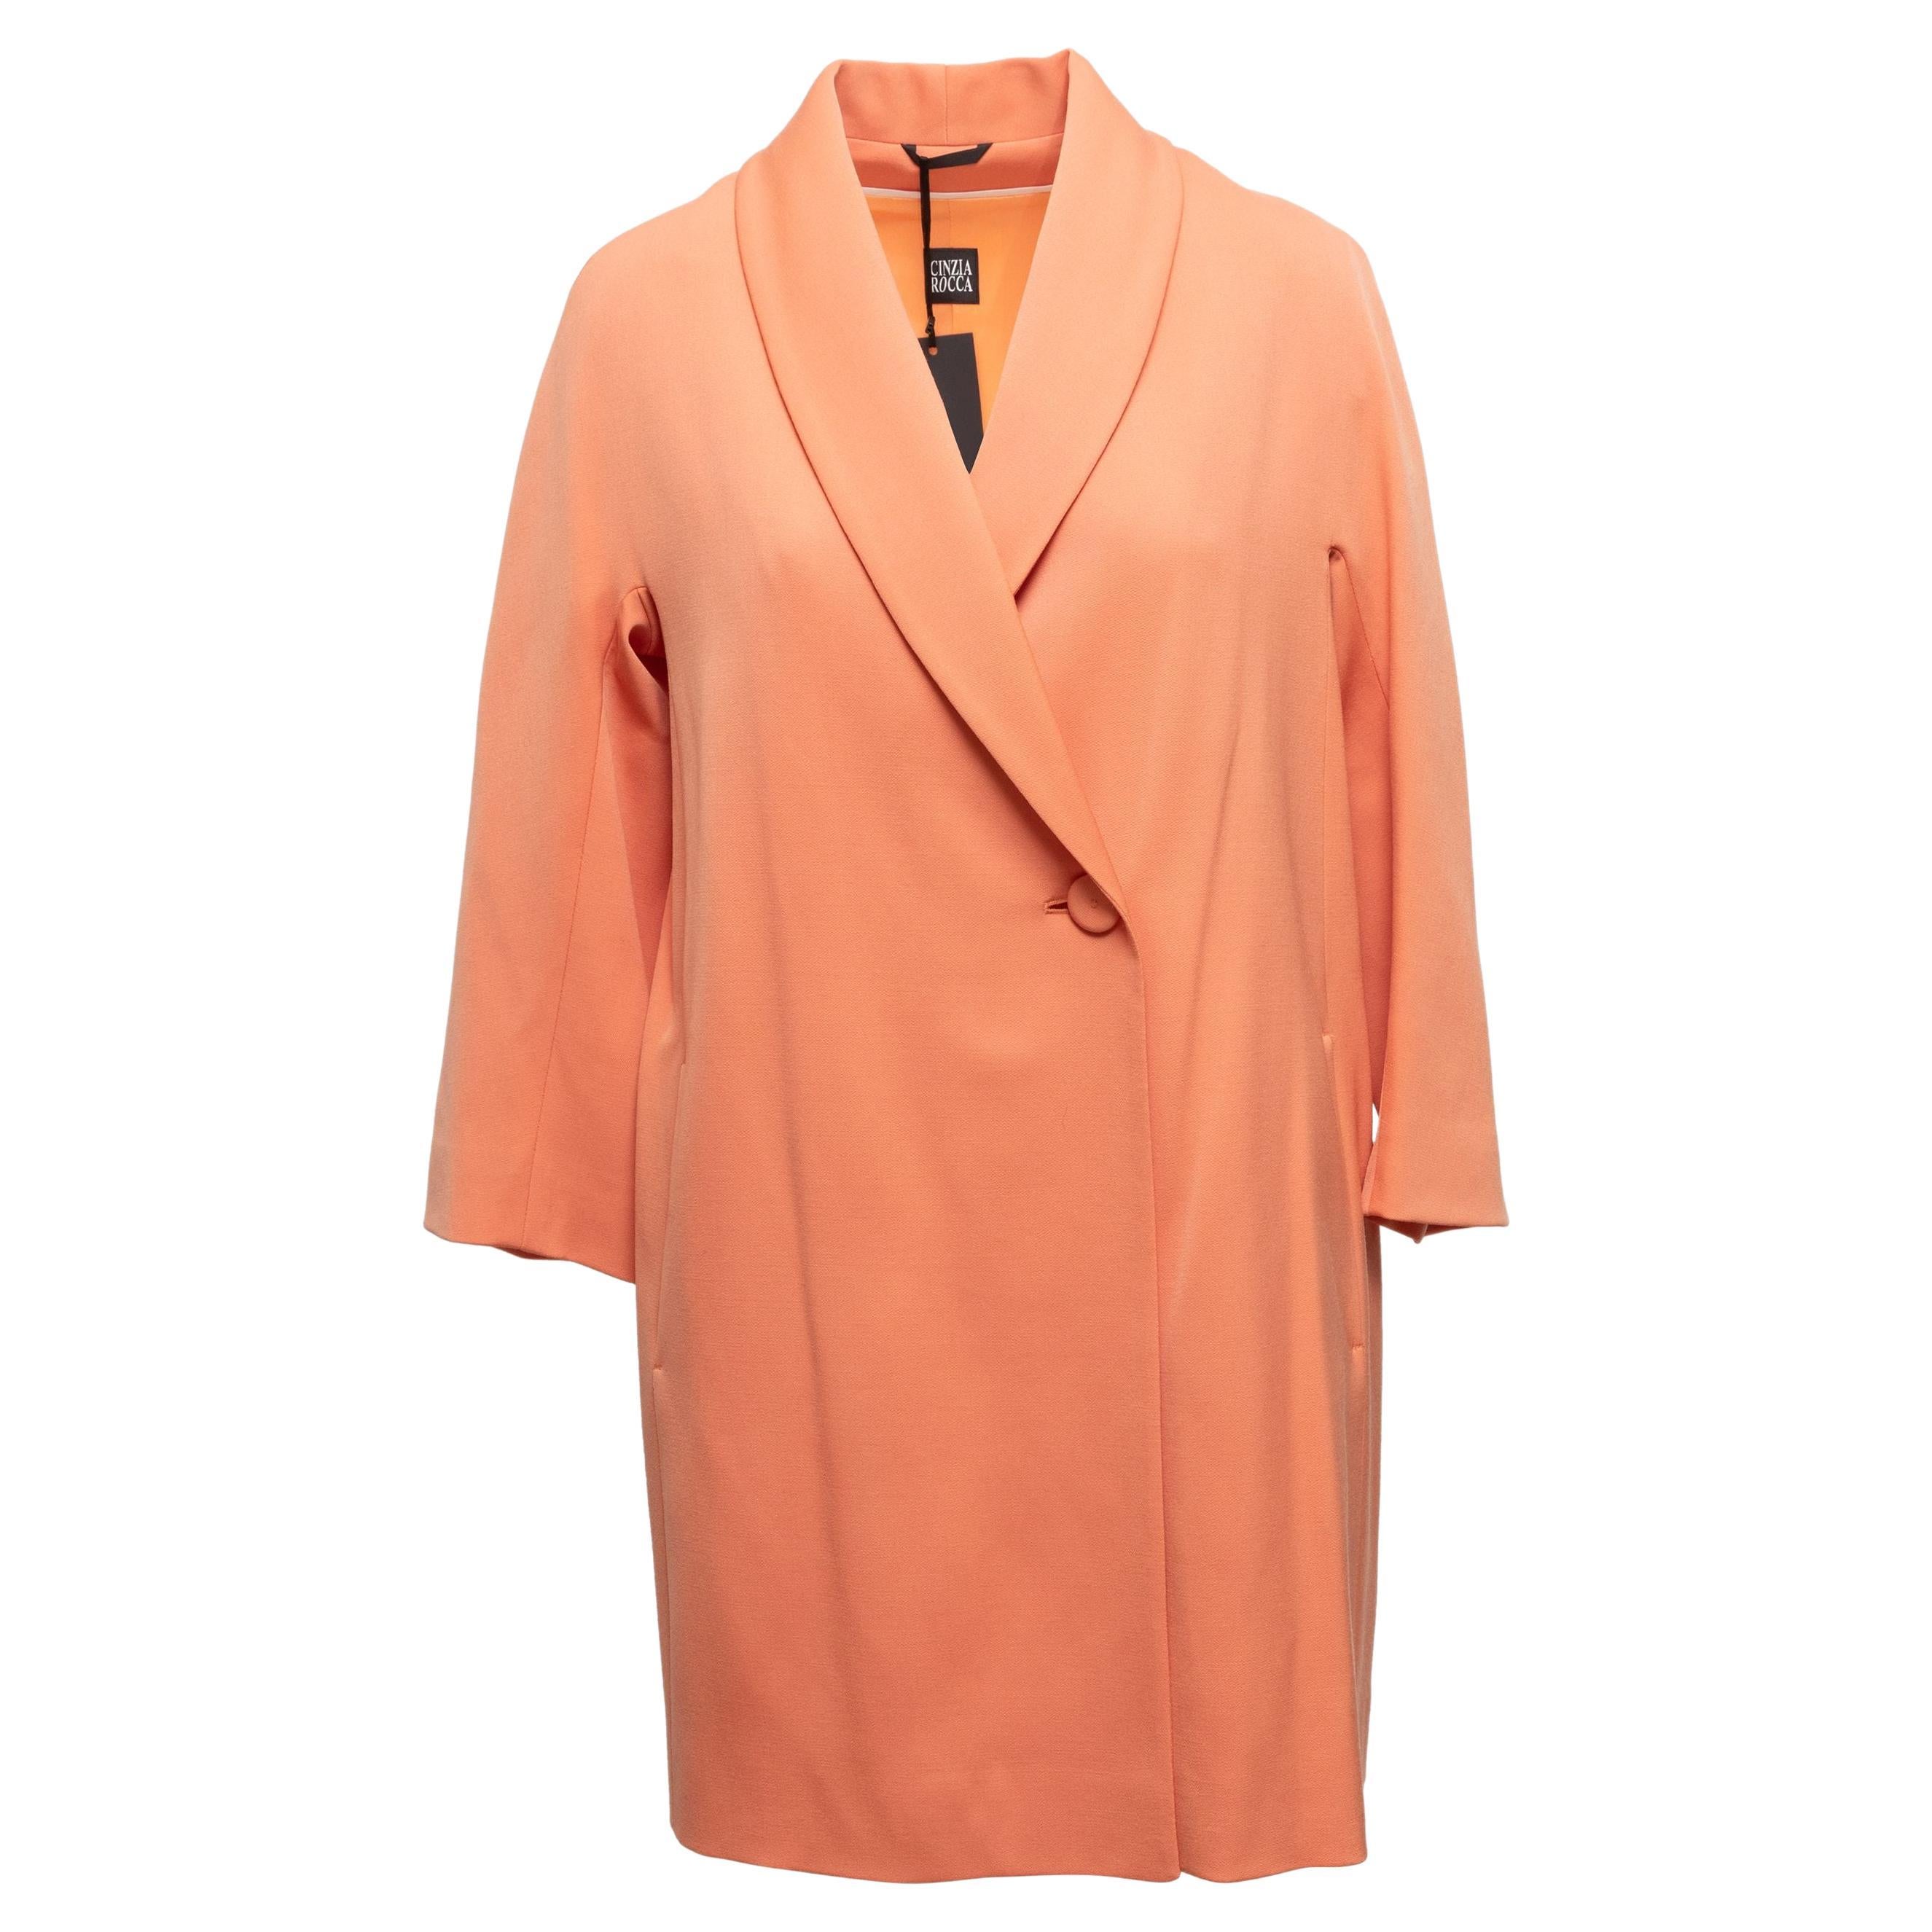 Cinzia Rocca Pastel Orange Virgin Wool Coat